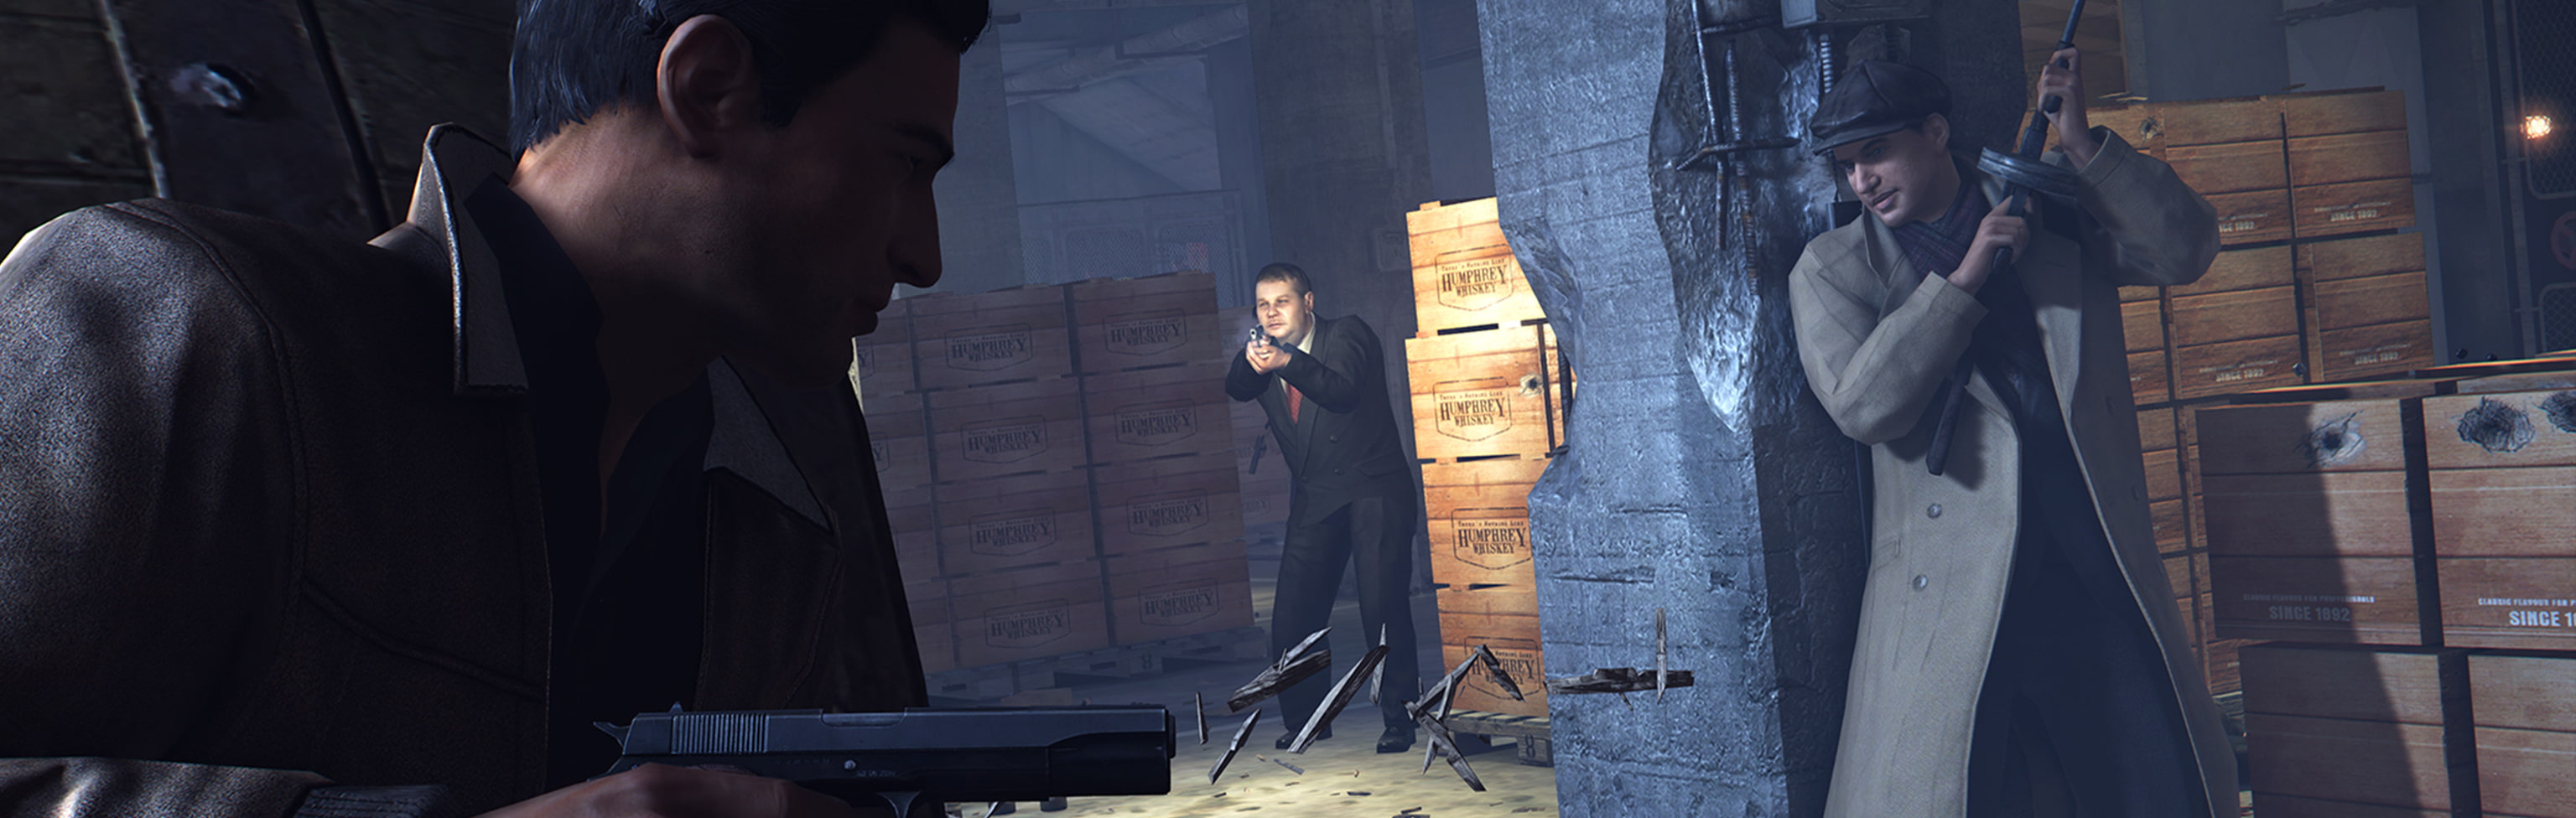 Mafia 3 revela os requisitos mínimos para rodar o jogo no PC